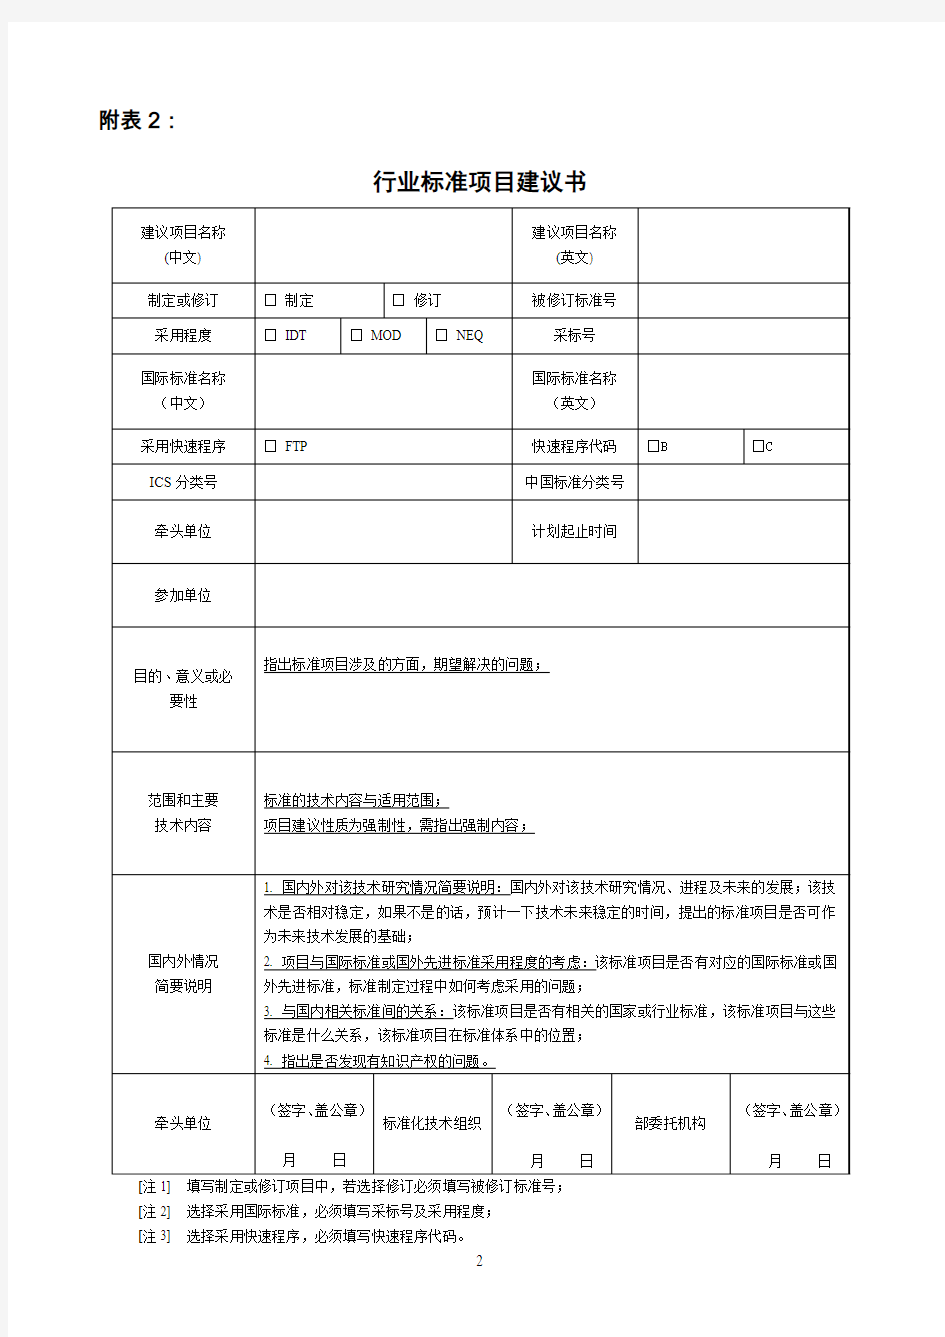 行业标准制定管理暂行办法附表-中国电子工业标准化技术协会